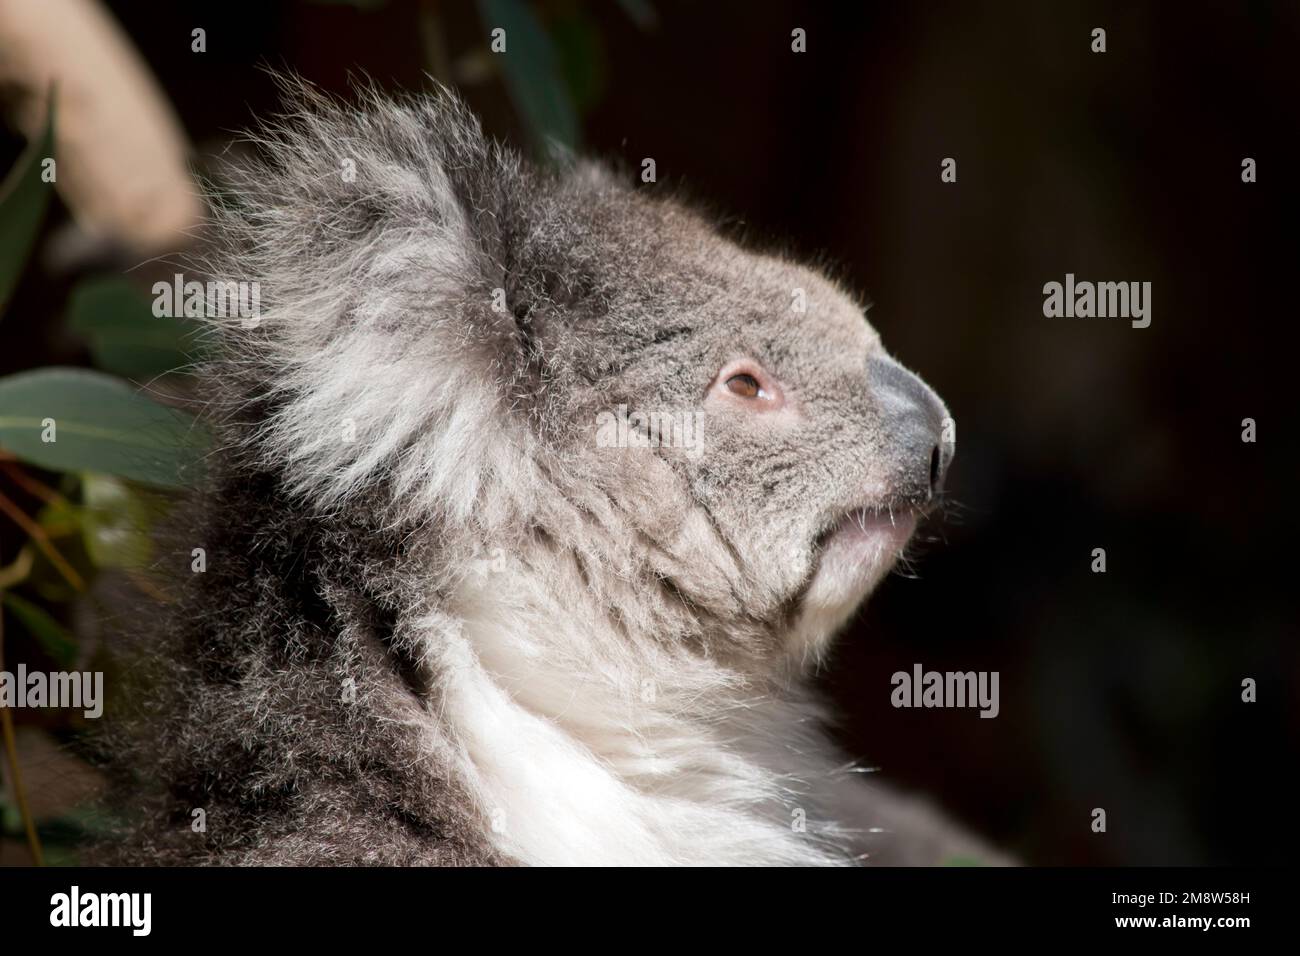 il koala è un marsupiale australiano. Vive sugli alberi di eucalipto Foto Stock